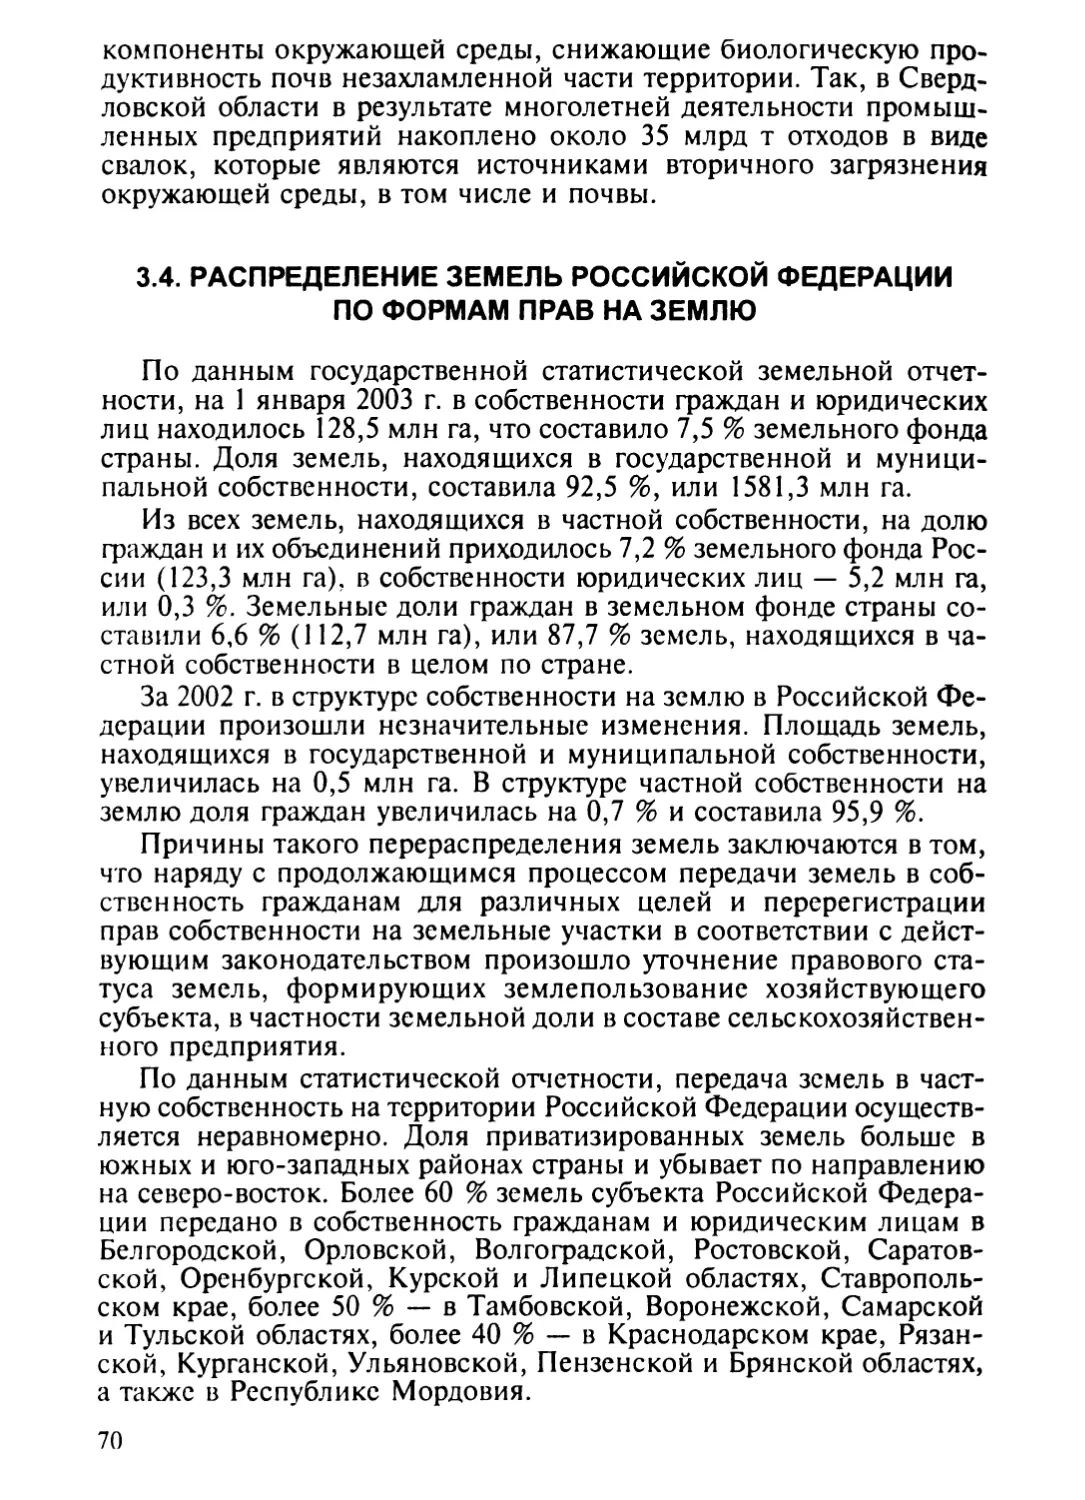 3.4. Распределение земель Российской Федерации по формам прав на землю